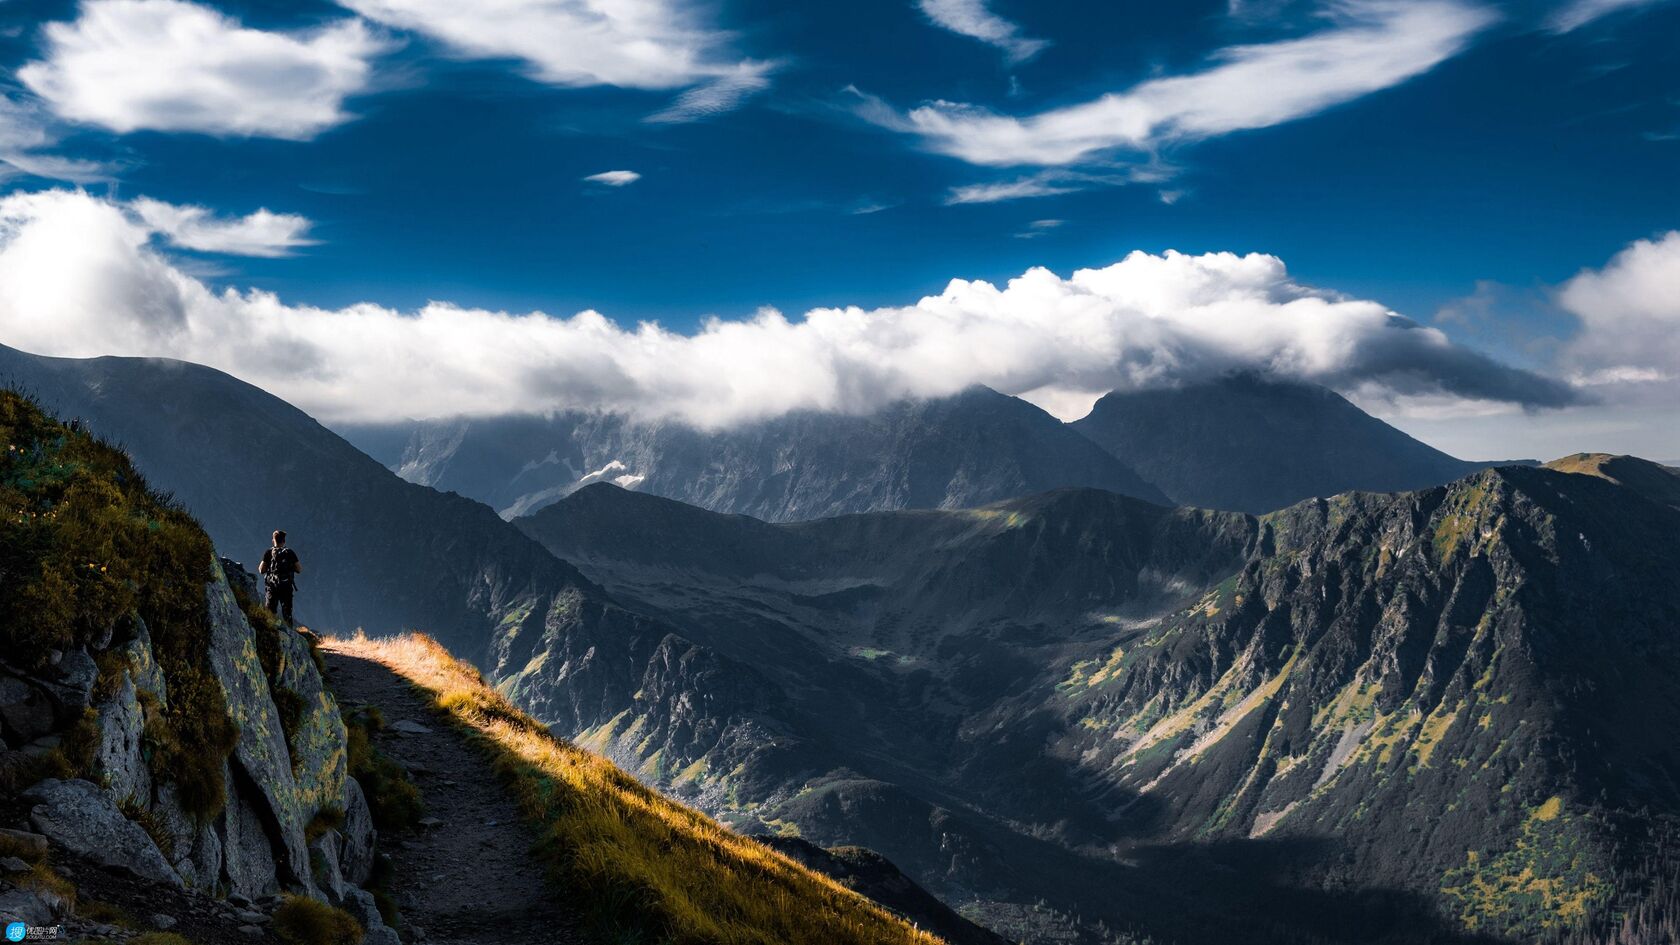 塔特拉山 山脉 旅行者 背包客 云彩 壮观景色壁纸图片